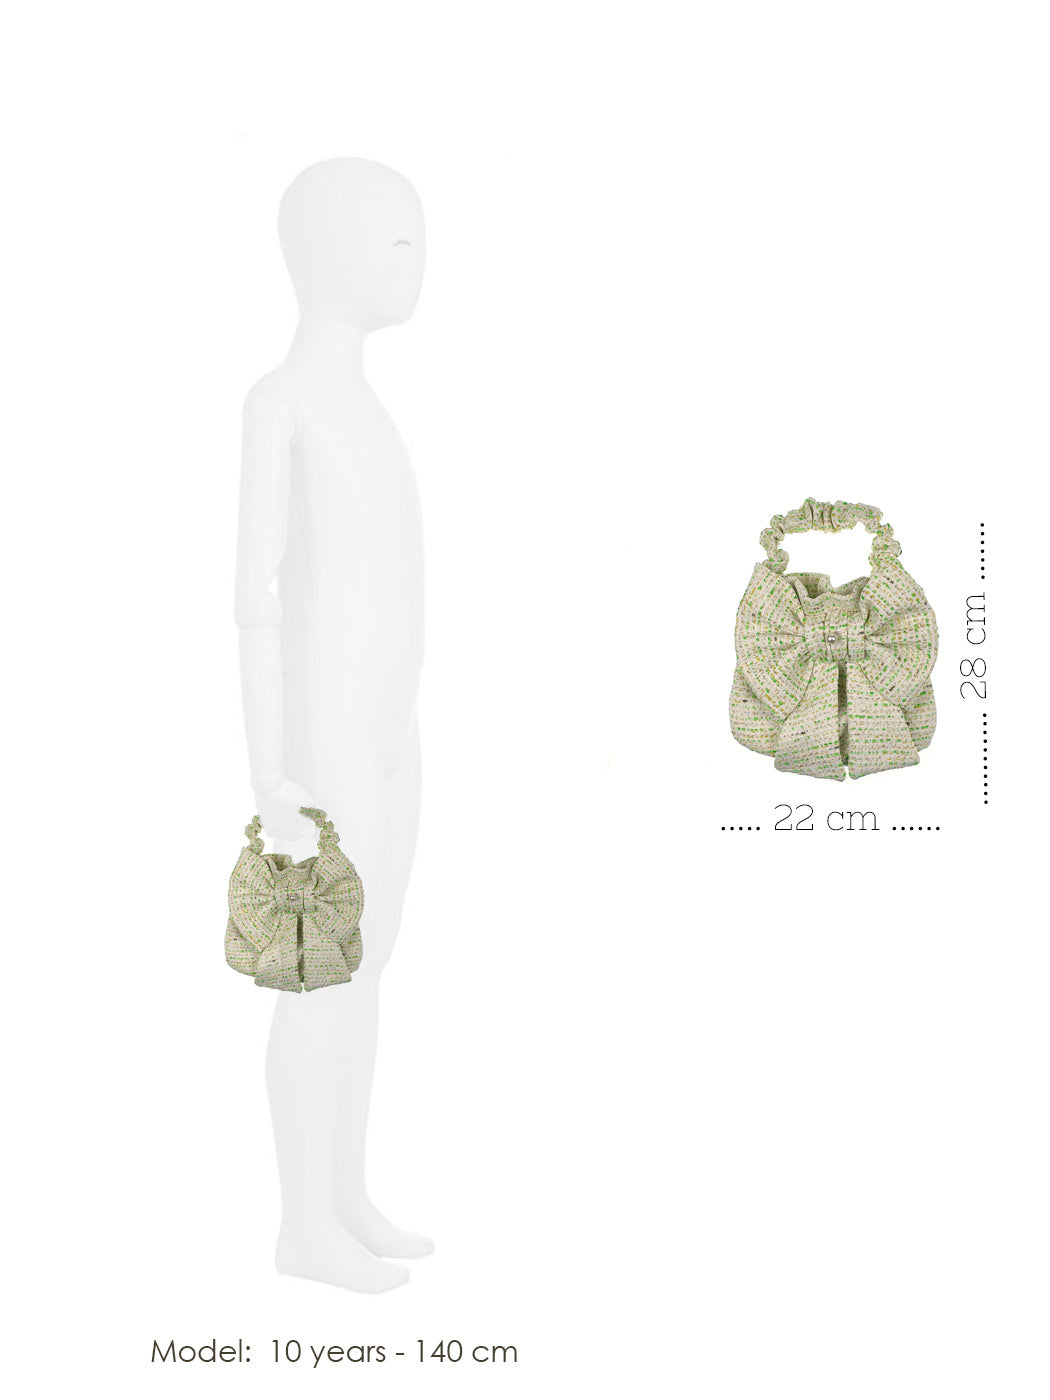 Soft tweed mini handbag with bow